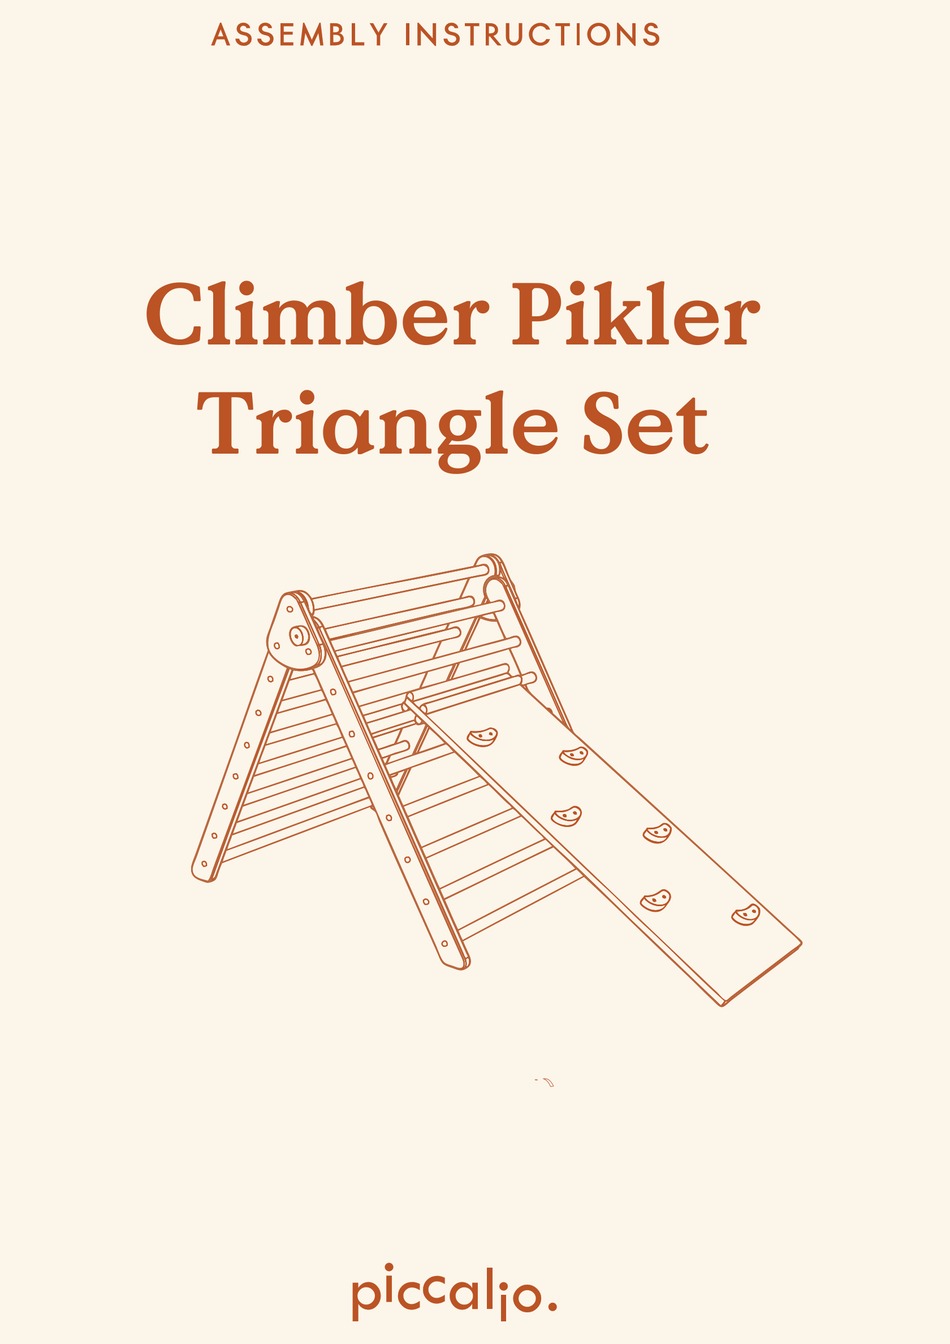 Piccalio Climber Pikler Triangle Set